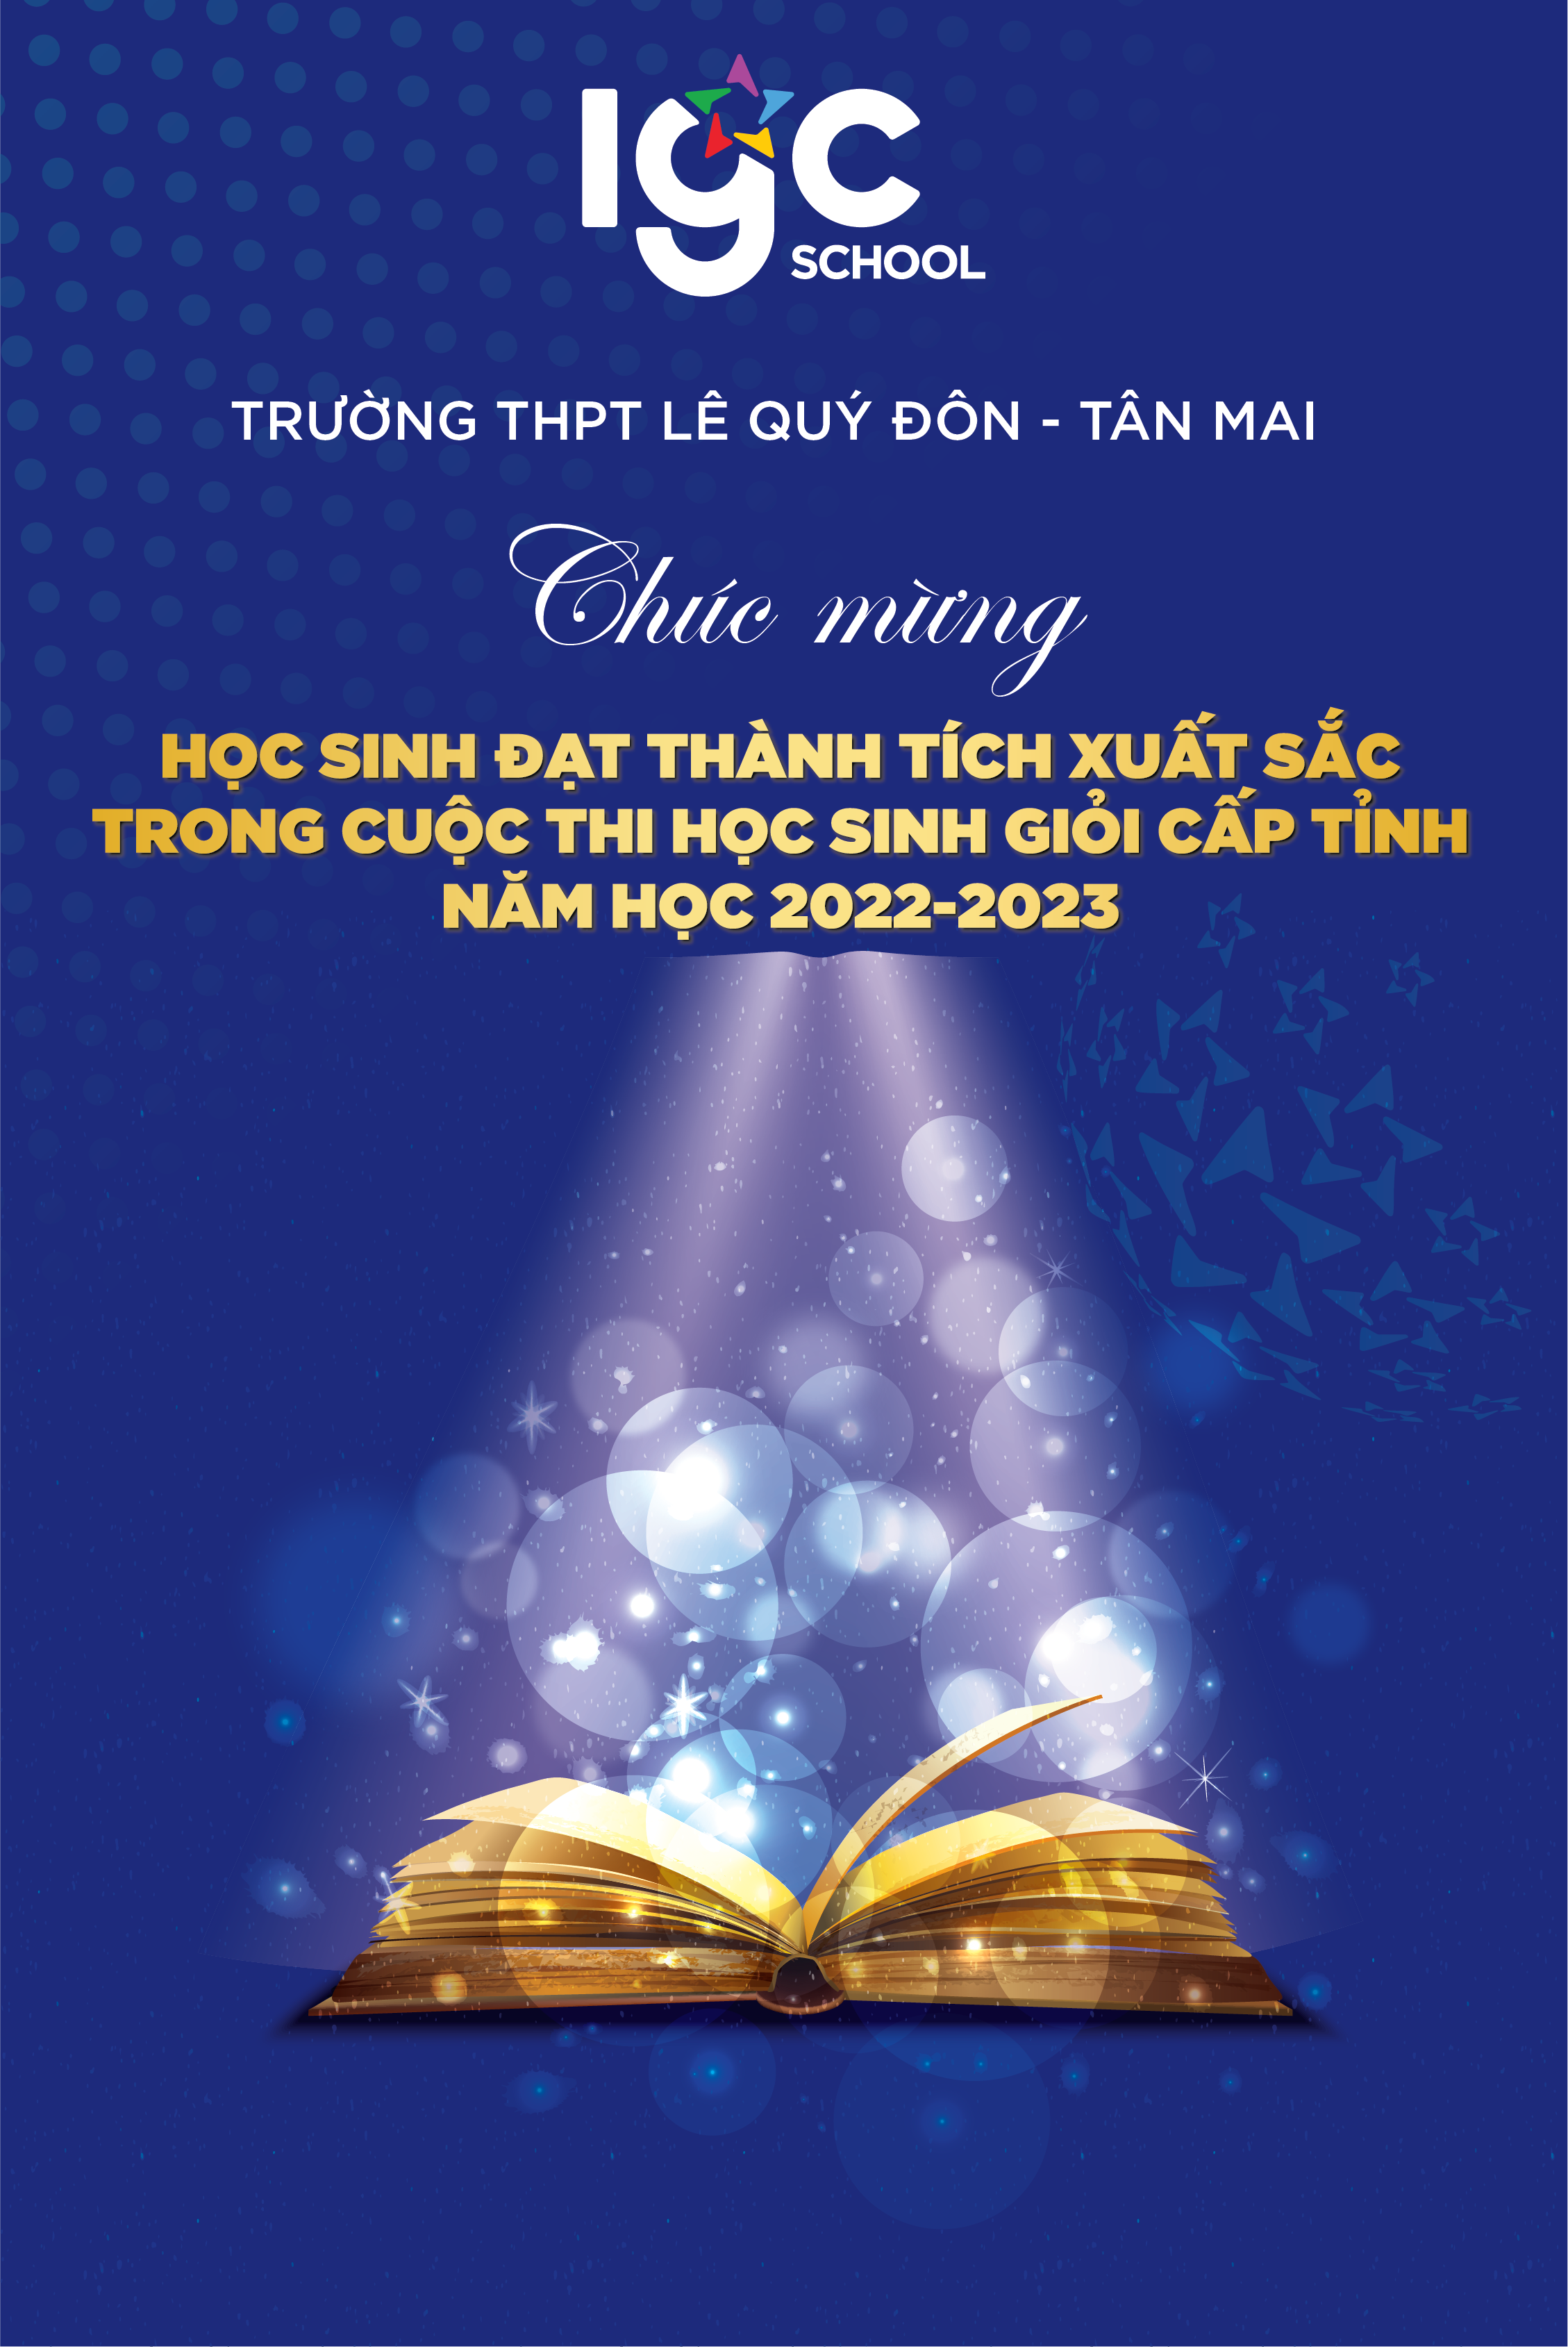 Chúc mừng và vinh danh 24 học sinh Trường THPT Lê Quý Đôn - Tân Mai đã có thành tích cao trong kỳ thi học sinh giỏi cấp Tỉnh năm học 2022-2023!